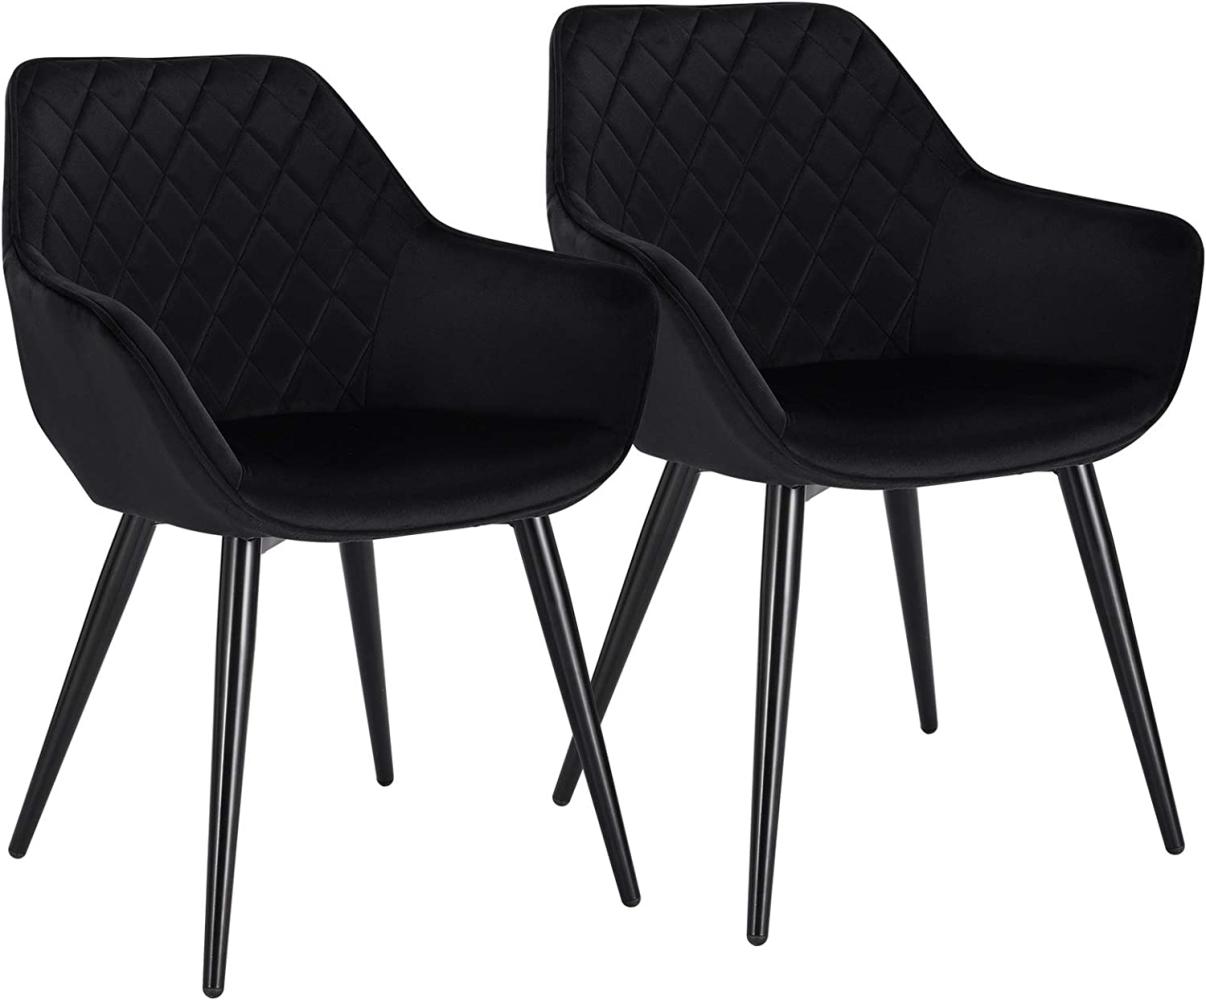 WOLTU Esszimmerstühle BH153sz-2 2er Set Küchenstühle Wohnzimmerstuhl Polsterstuhl Design Stuhl mit Armlehne Samt Gestell aus Stahl Schwarz Bild 1